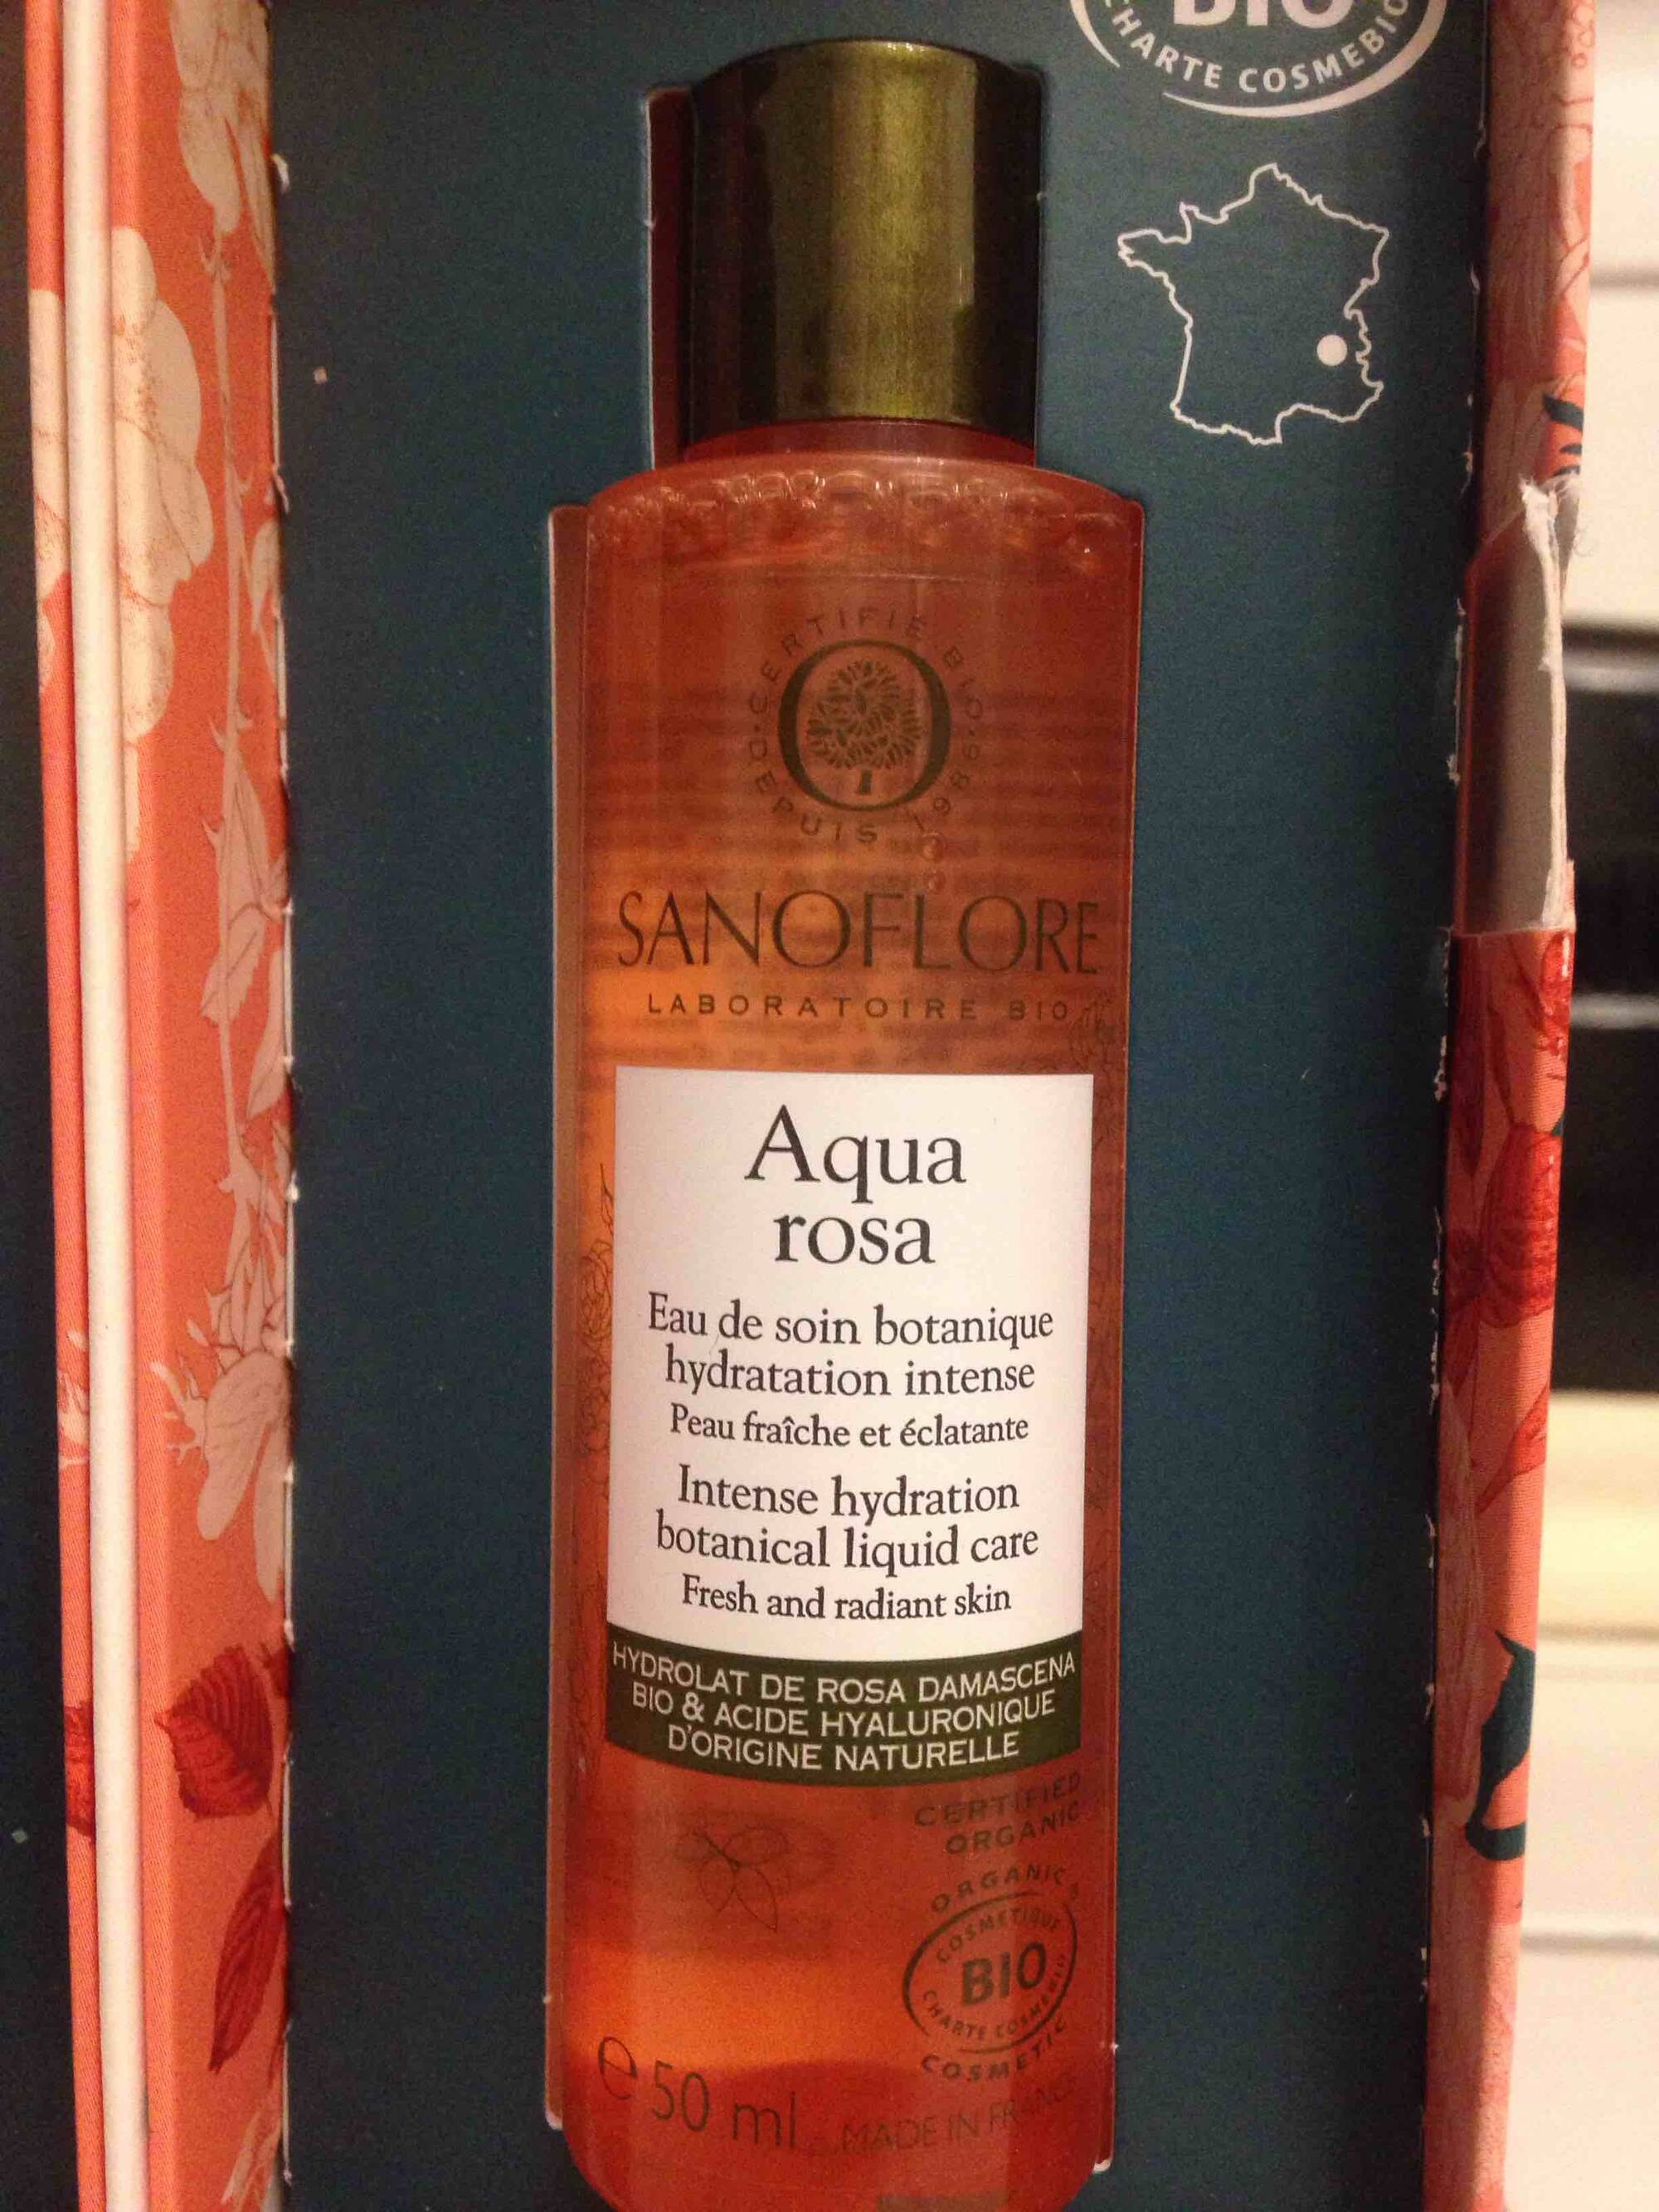 SANOFLORE - Aqua rosa - Eau de soin botanique hydratation intense